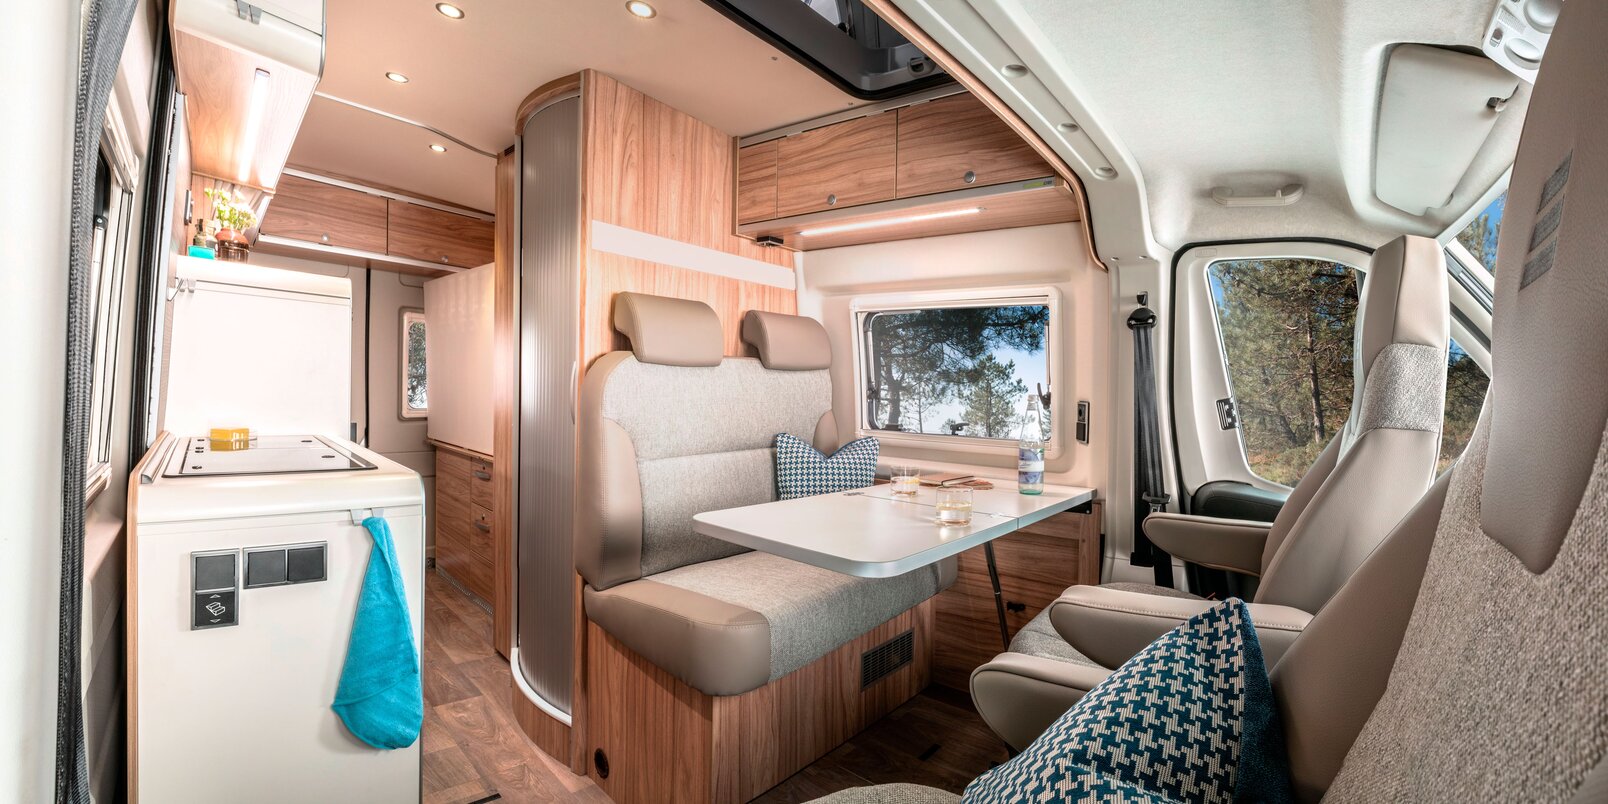 Sedili cabina guida, tavolo, dinette zona giorno, pensili, cucina e frigorifero nel Camper Van Fiat HYMER